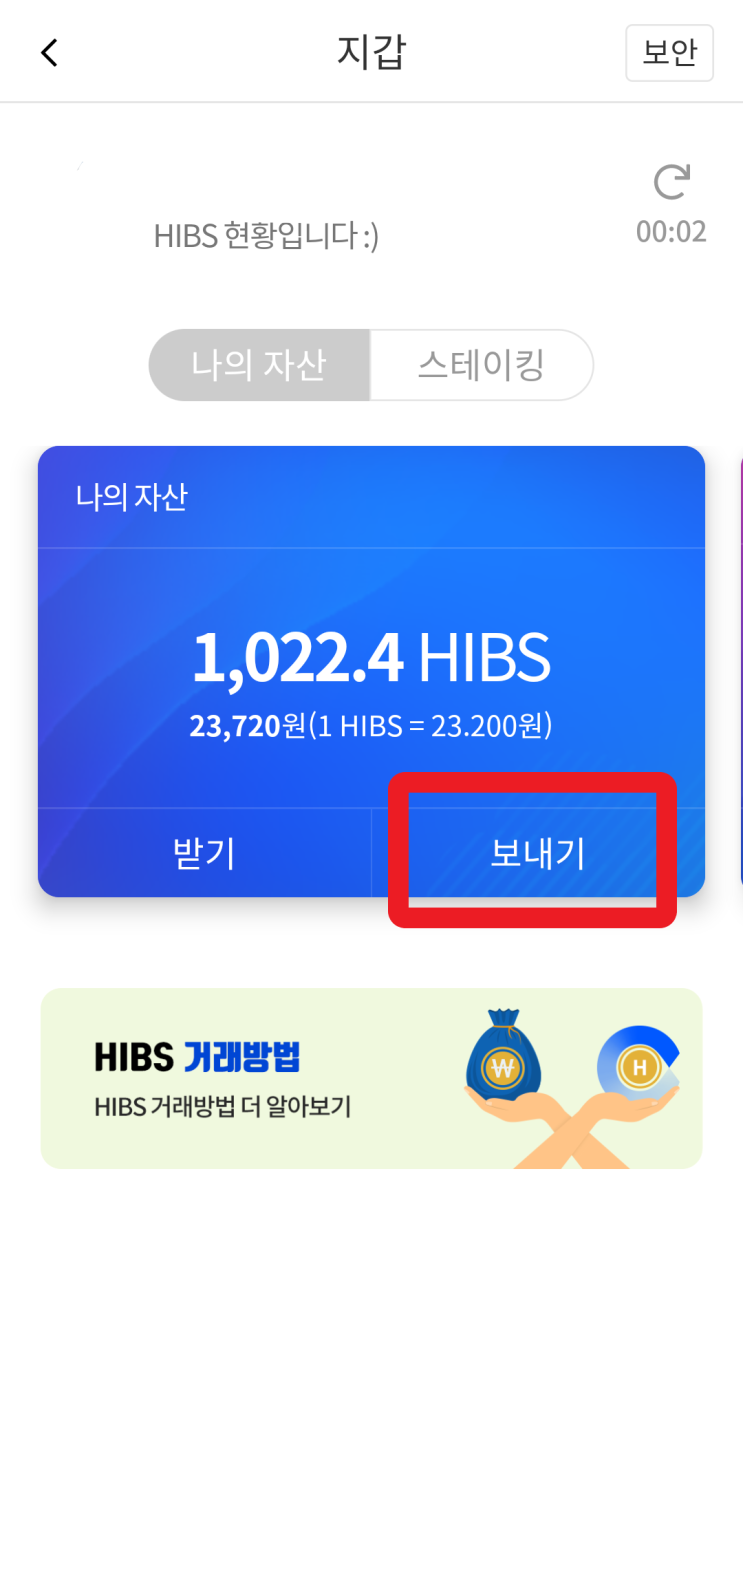 하블앱에서 모은 HIBS 코인 빗썸으로 옮기기^^, 코인테크, 앱테크, 하이블럭스 코인, 빗썸 BTC 상장